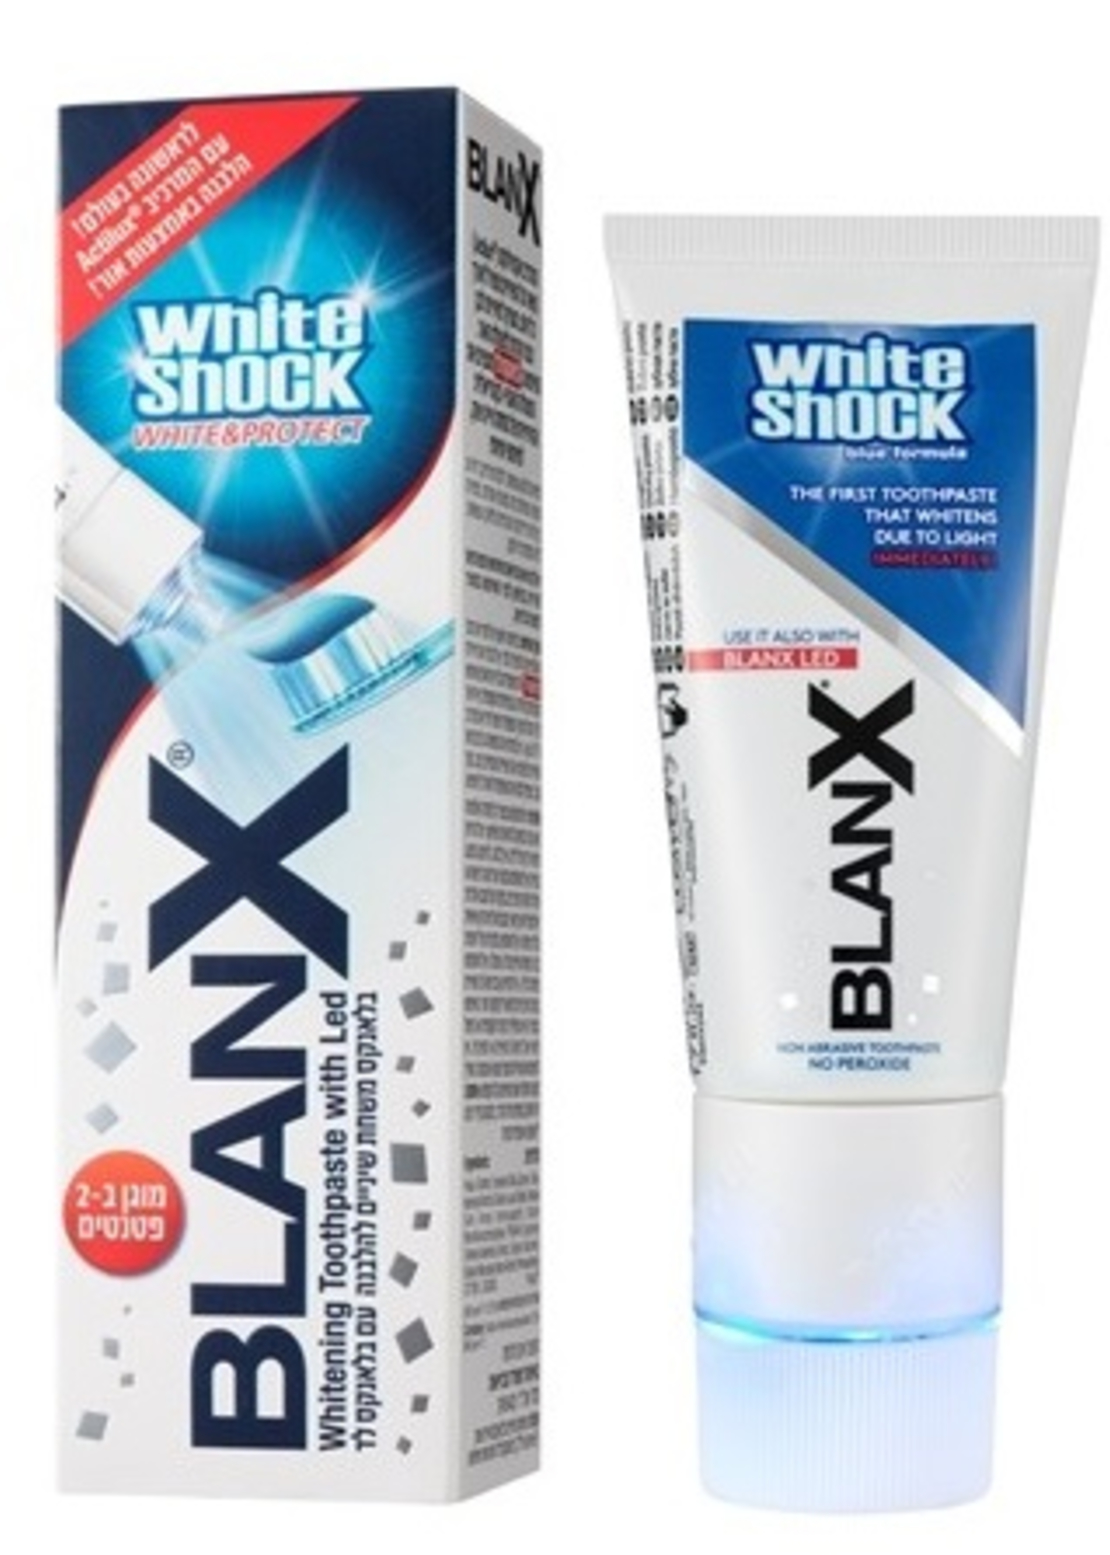 בלאנקס וויט שוק משחת שיניים עם לד BlanX White Shock Led